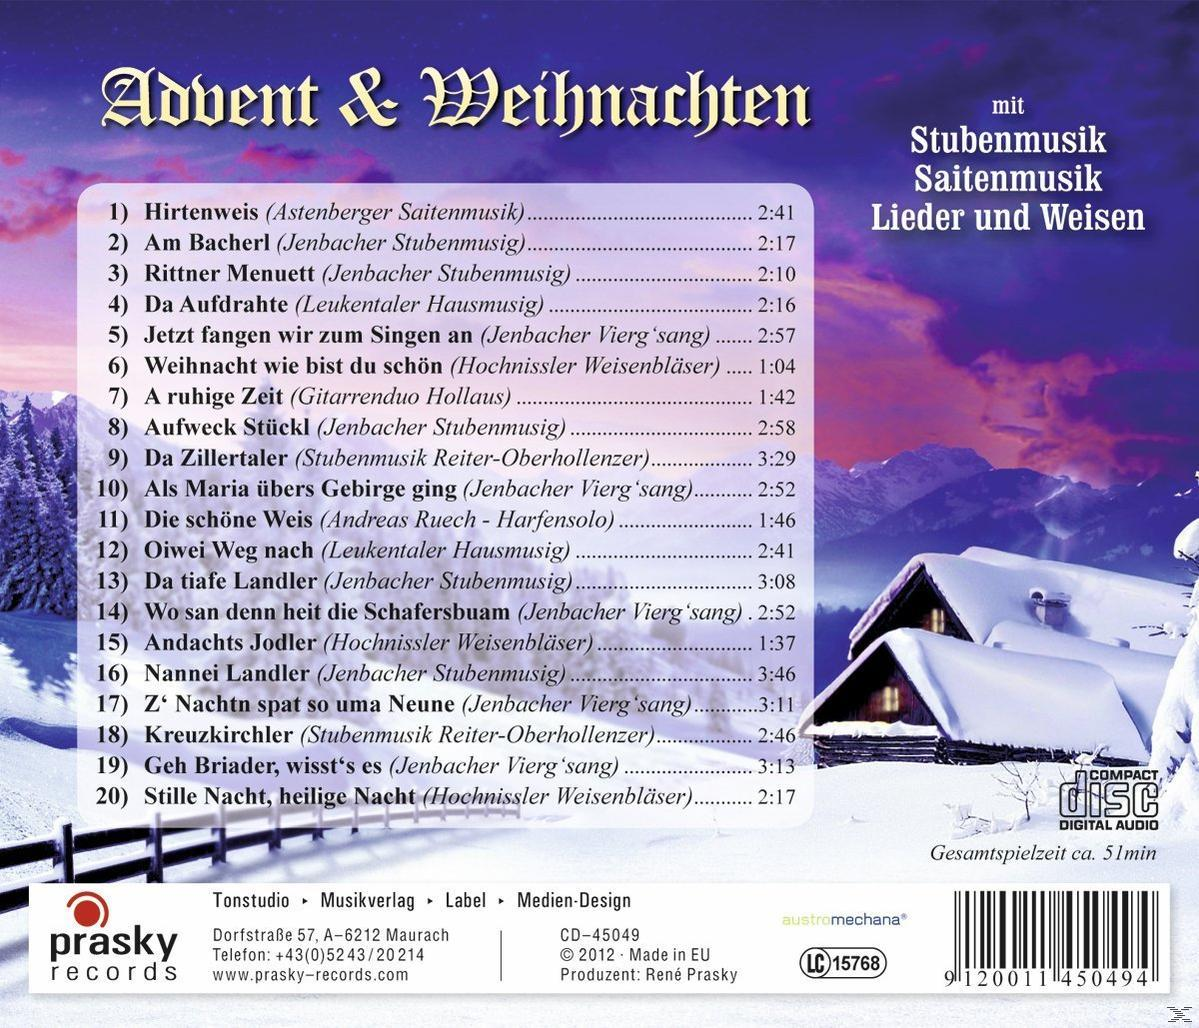 Lieder Weihnachten Und Stubenmusik, Mit (CD) - Weisen - Advent VARIOUS & Saitenmusik,